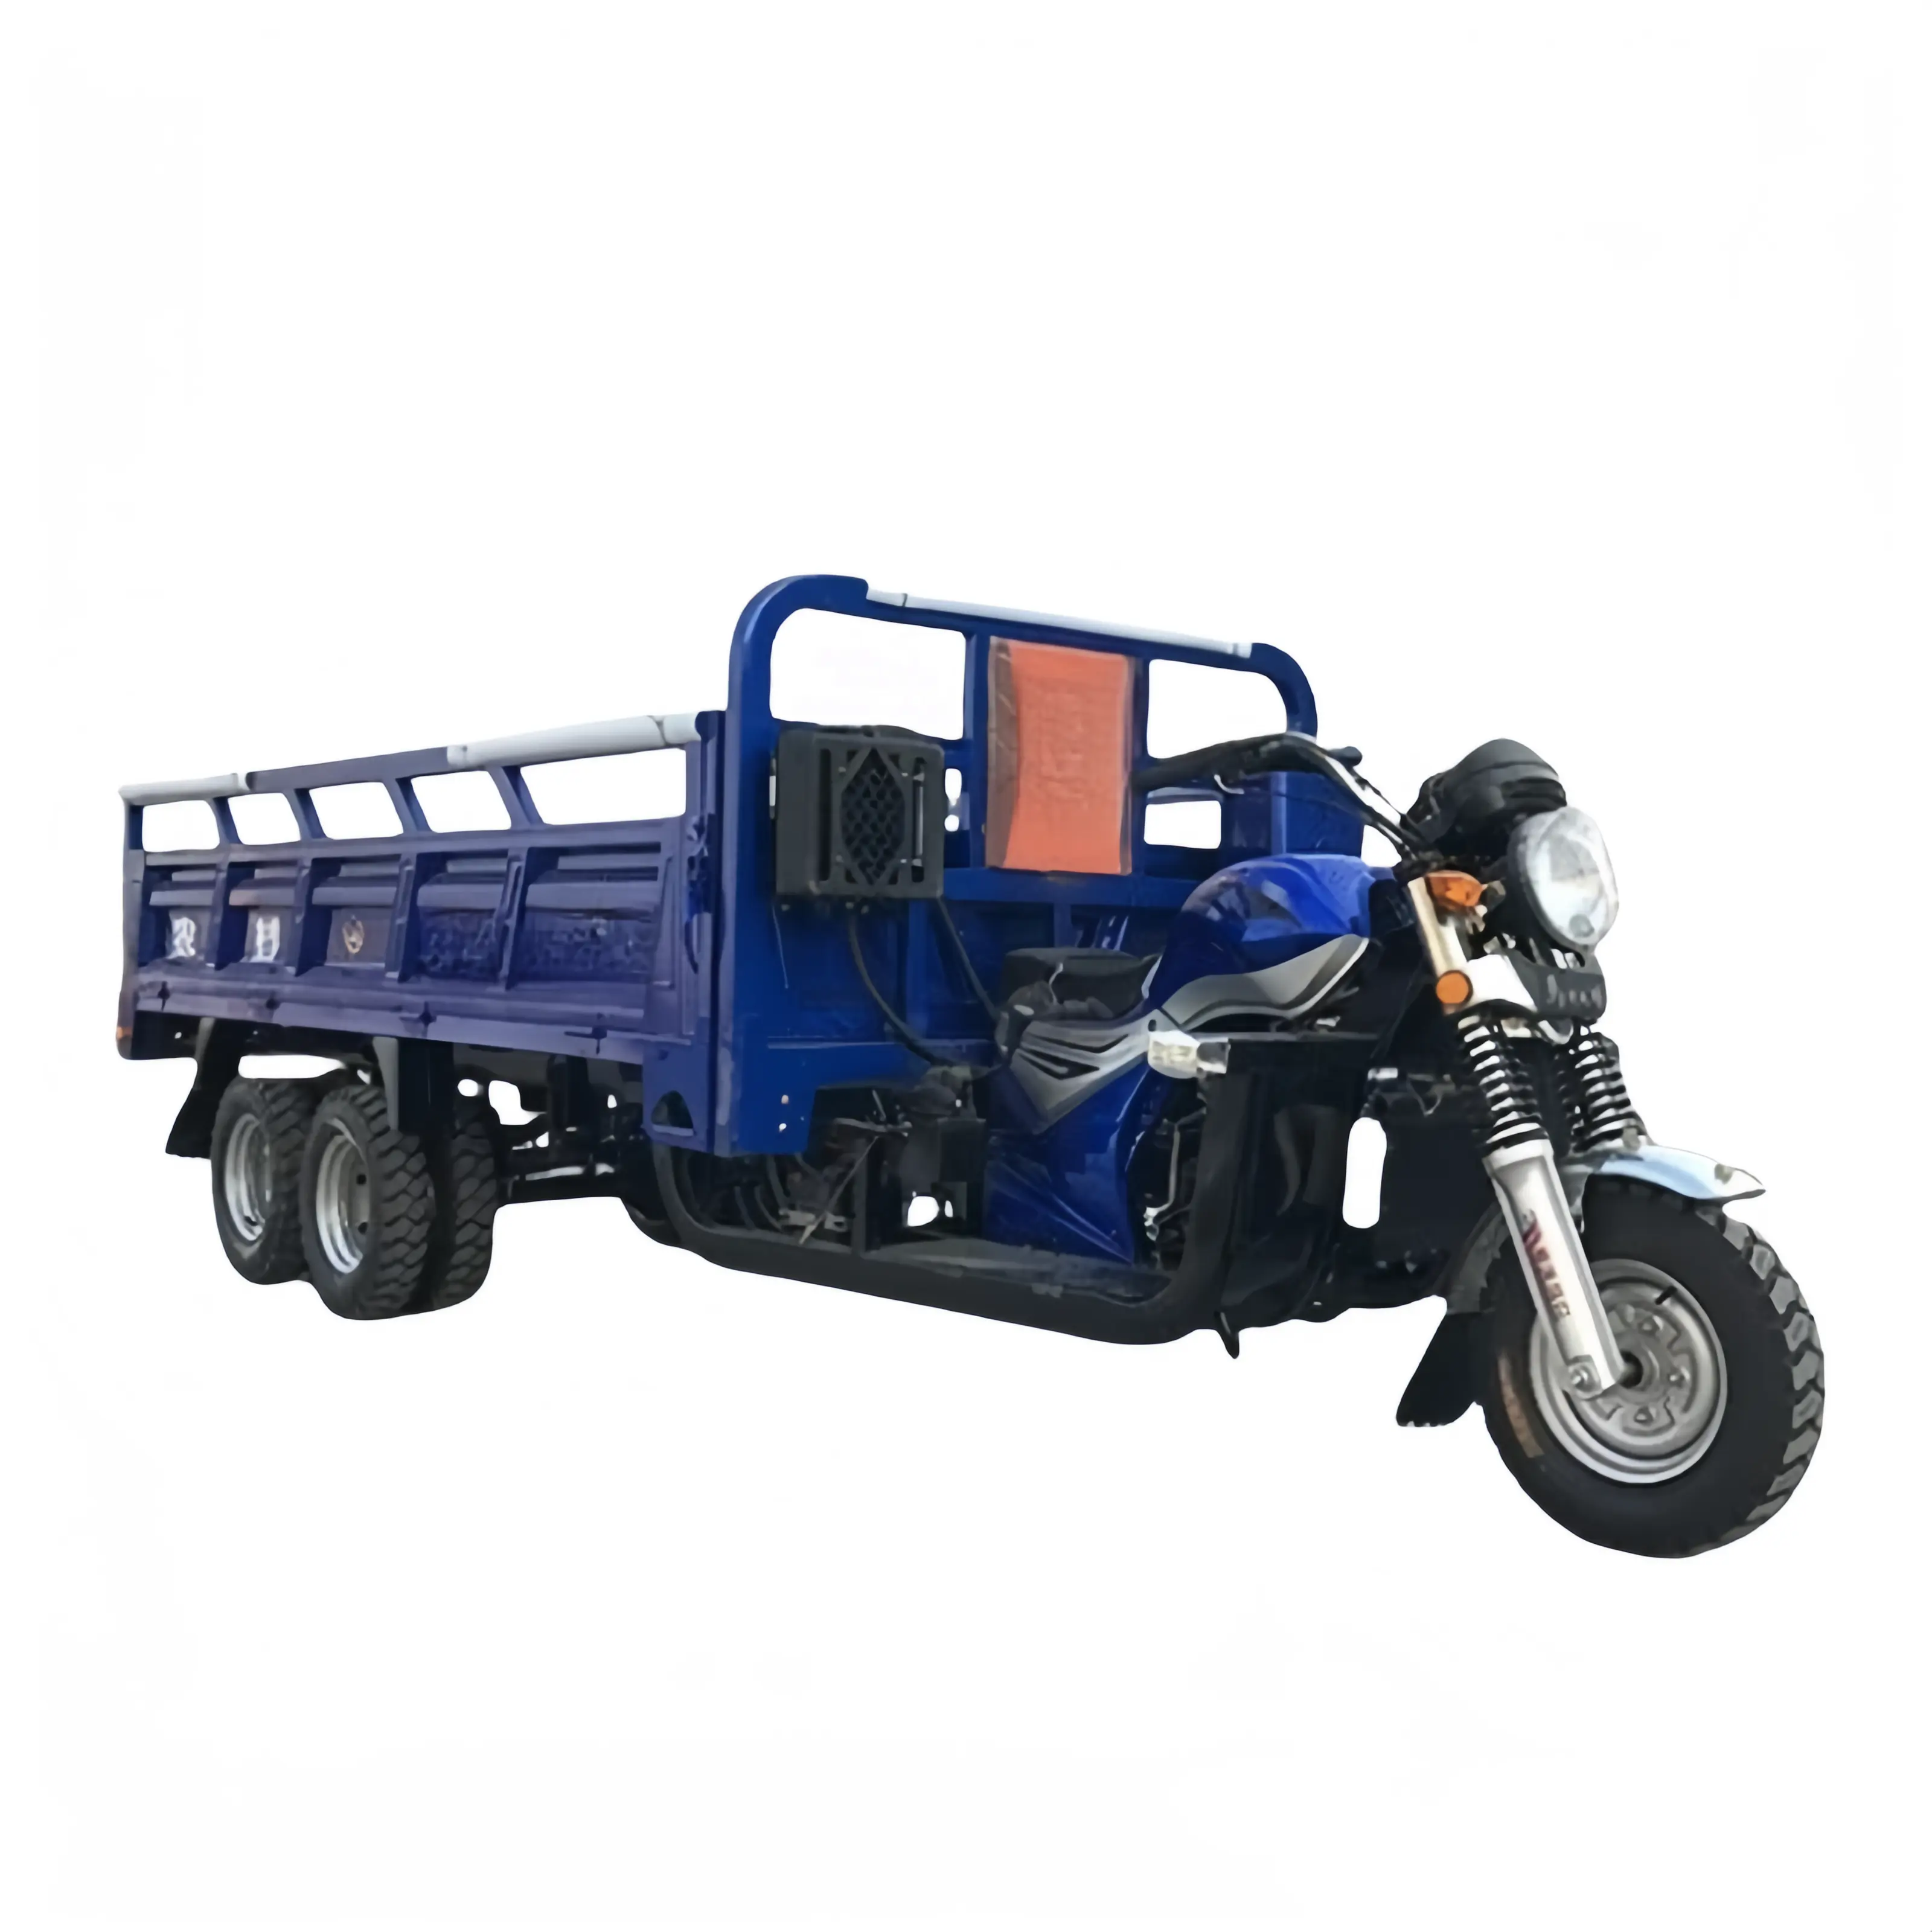 Новый стиль 250cc трехколесный мотоцикл пассажирский и грузовой трехколесный мотоцикл топливо бензин три колеса мотоцикл